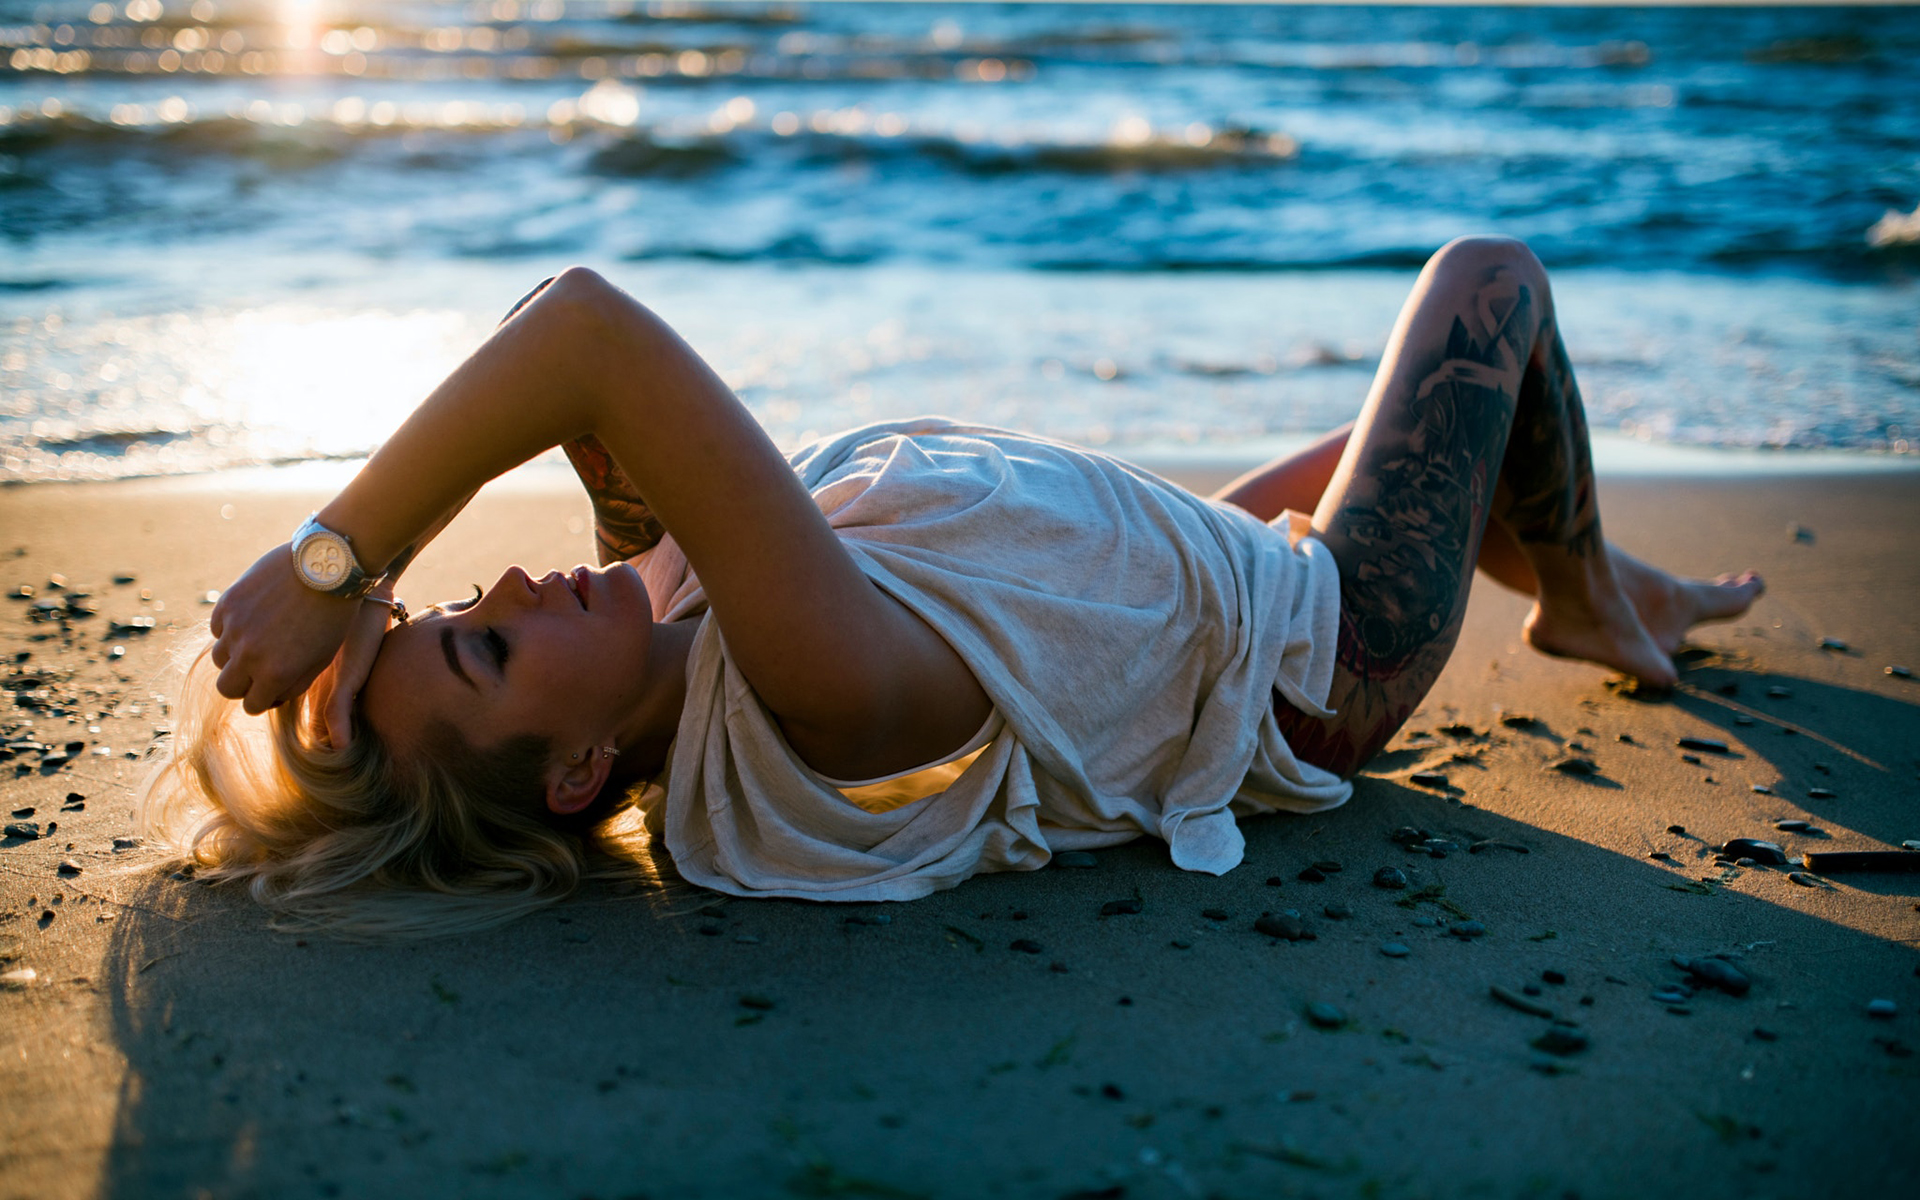 Ethnic chill deep. Блондинка на песке. Девушка в платье красивая поза на песке. Дип Хаус. Девушка в платье рубашке на пляже.